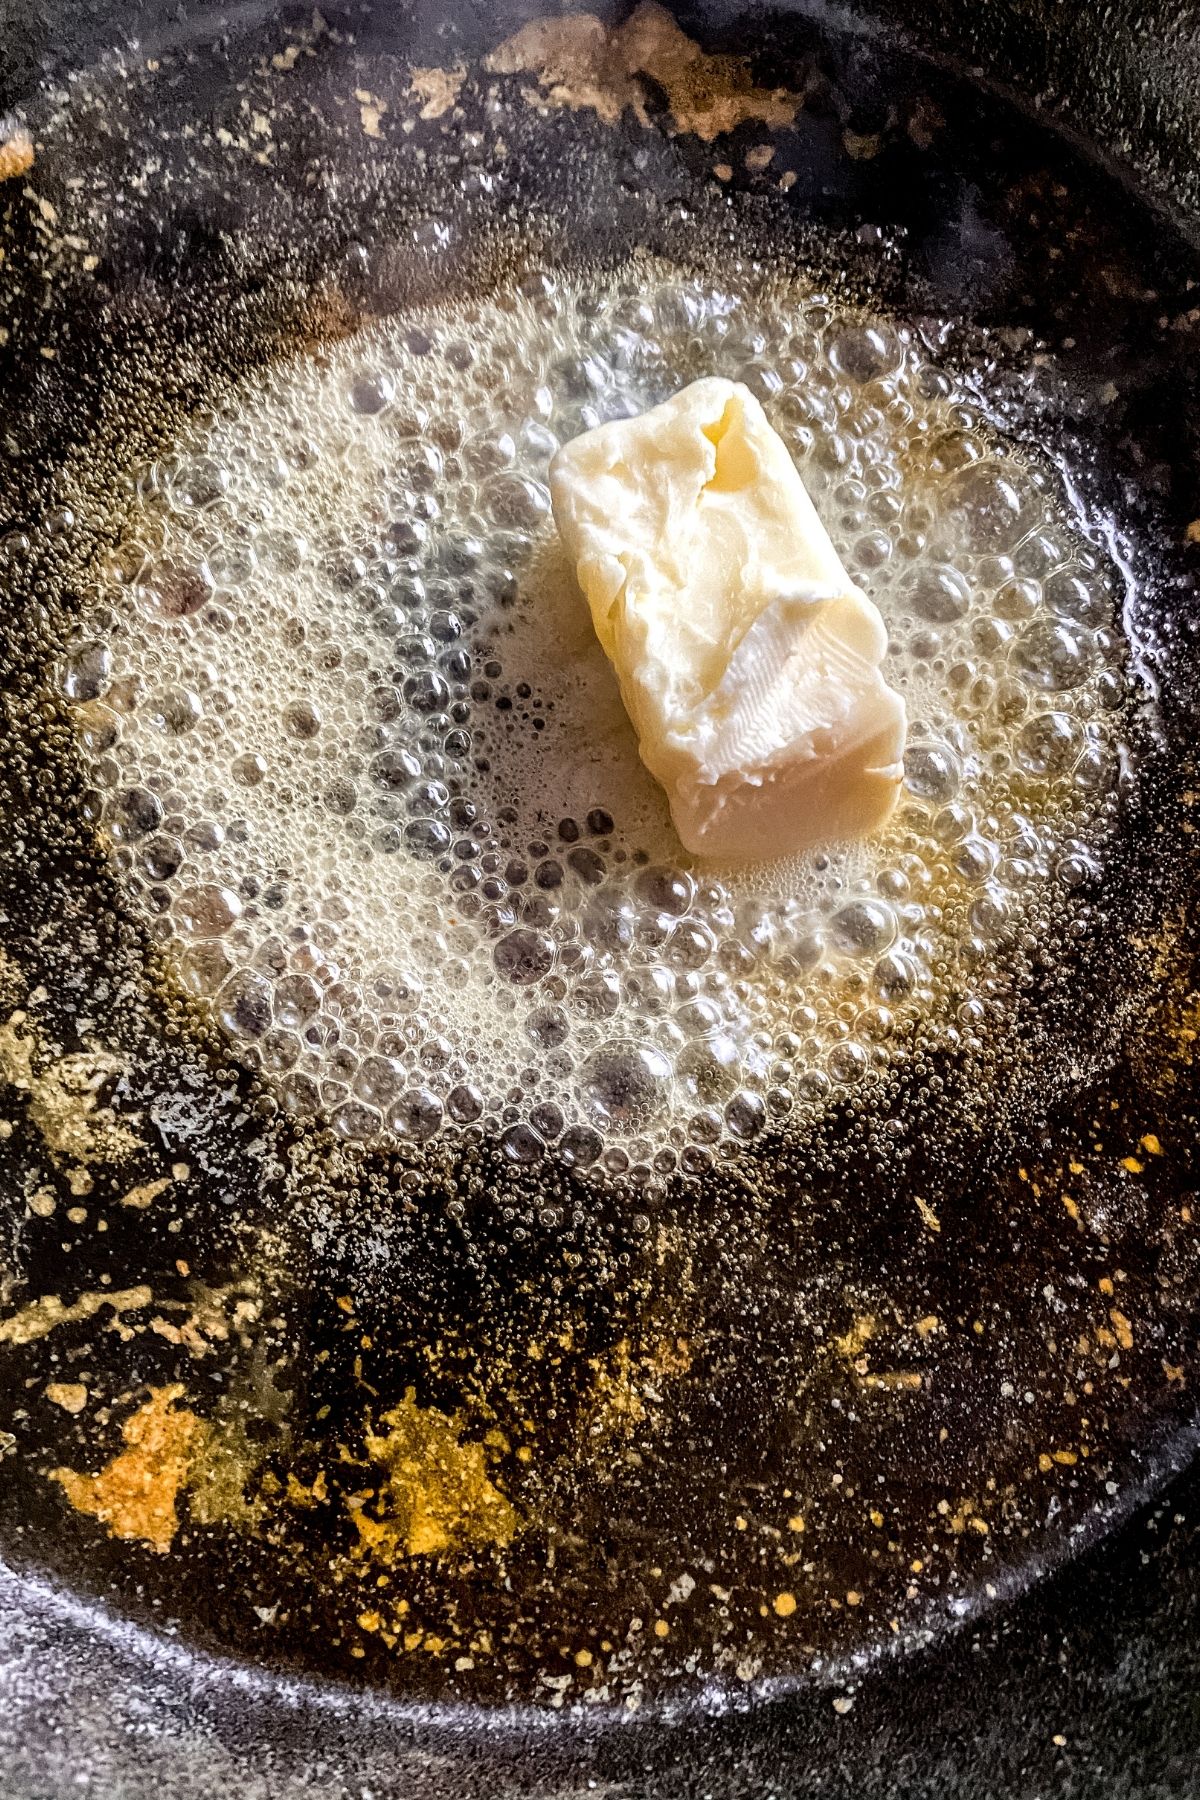 Butter melting in skillet